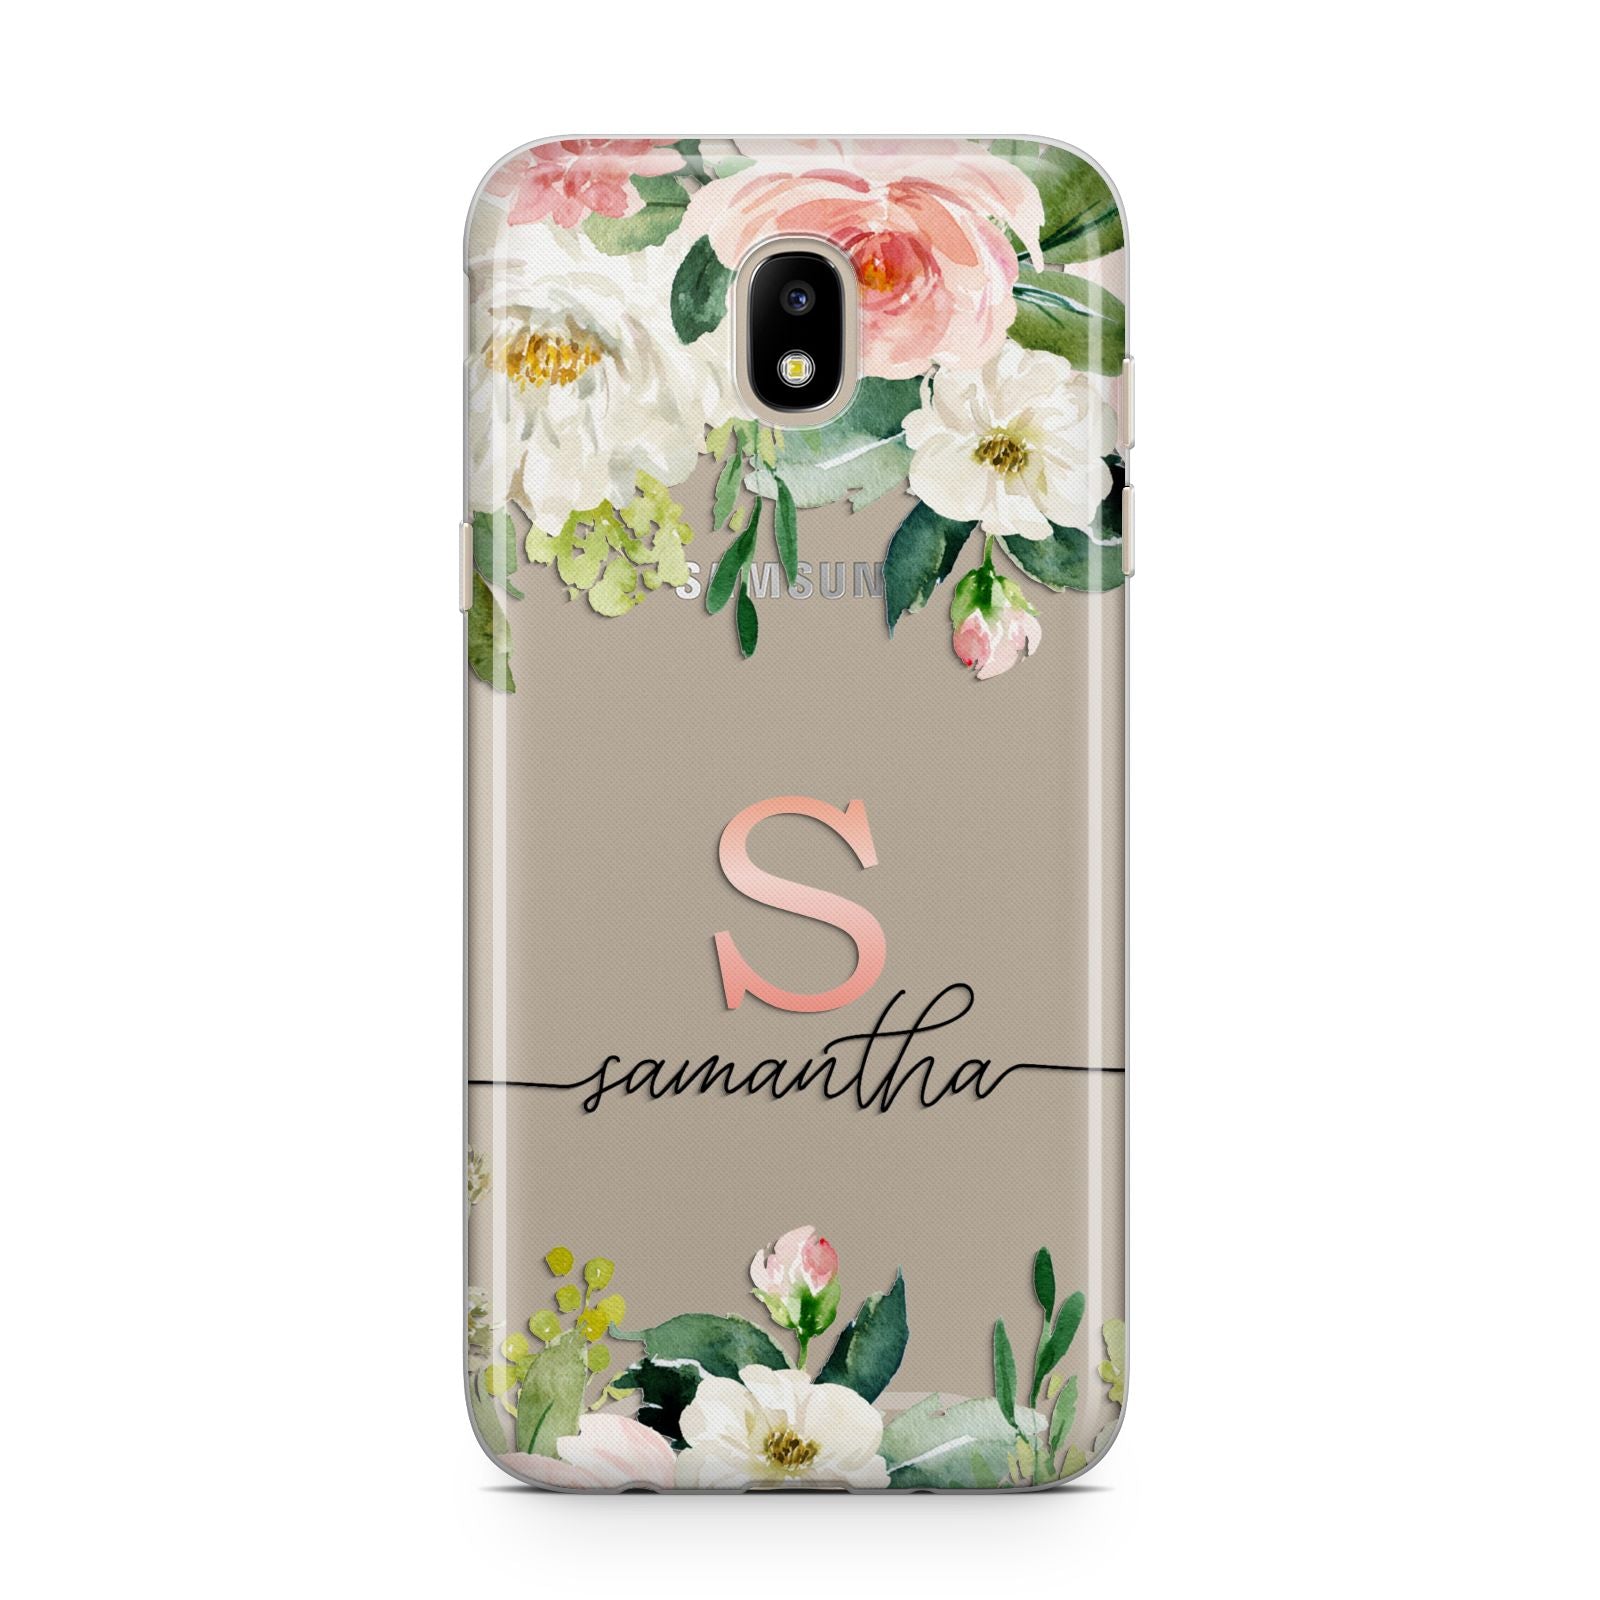 Monogrammed Floral Roses Samsung J5 2017 Case